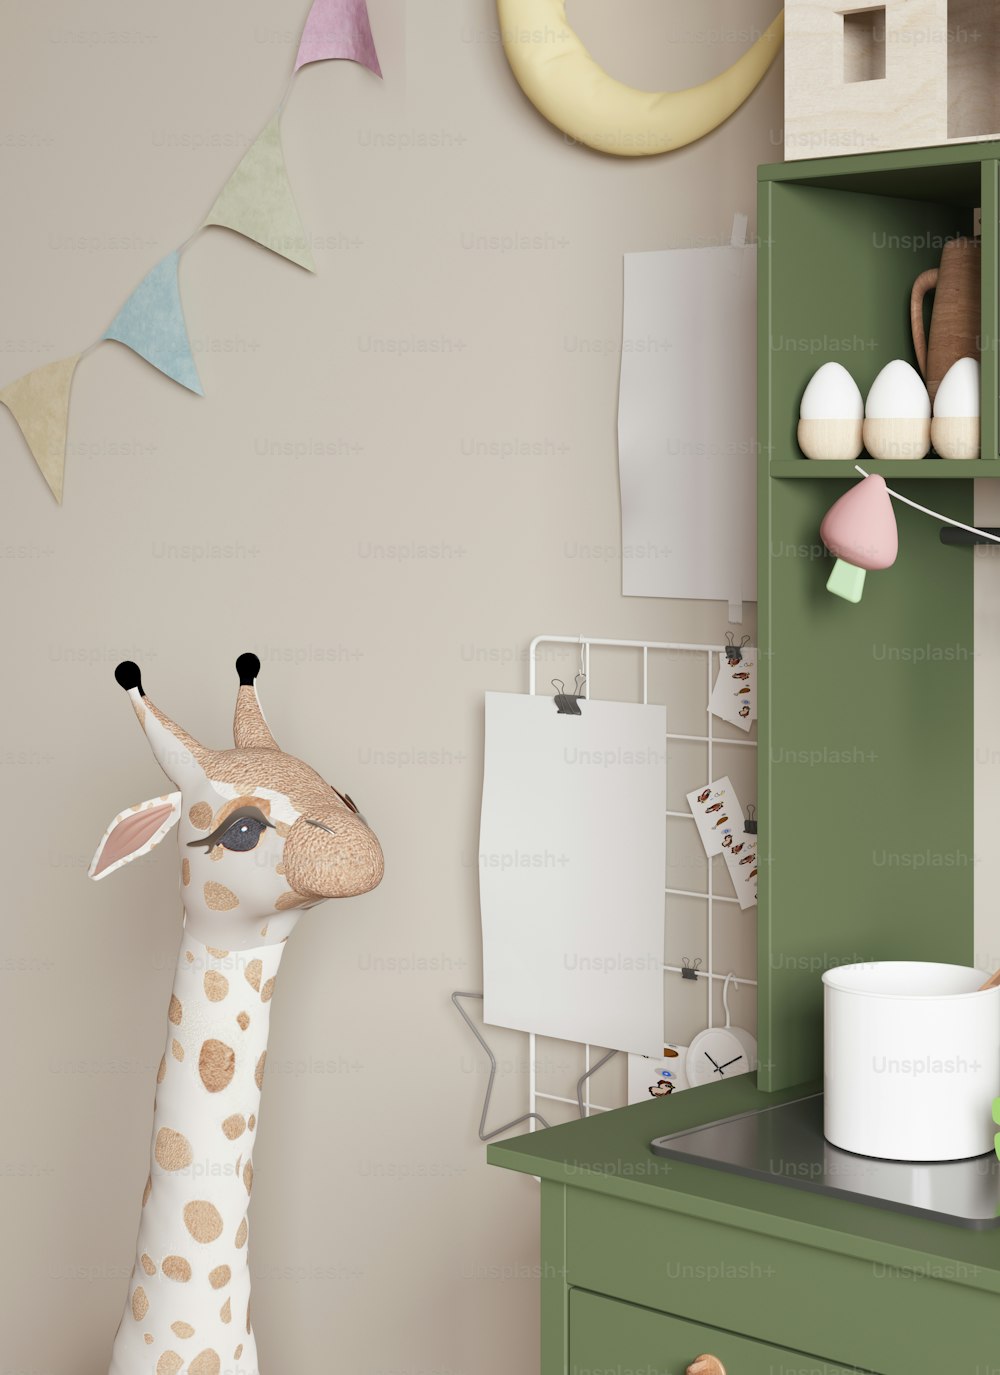 Une girafe jouet debout à côté d’une armoire verte